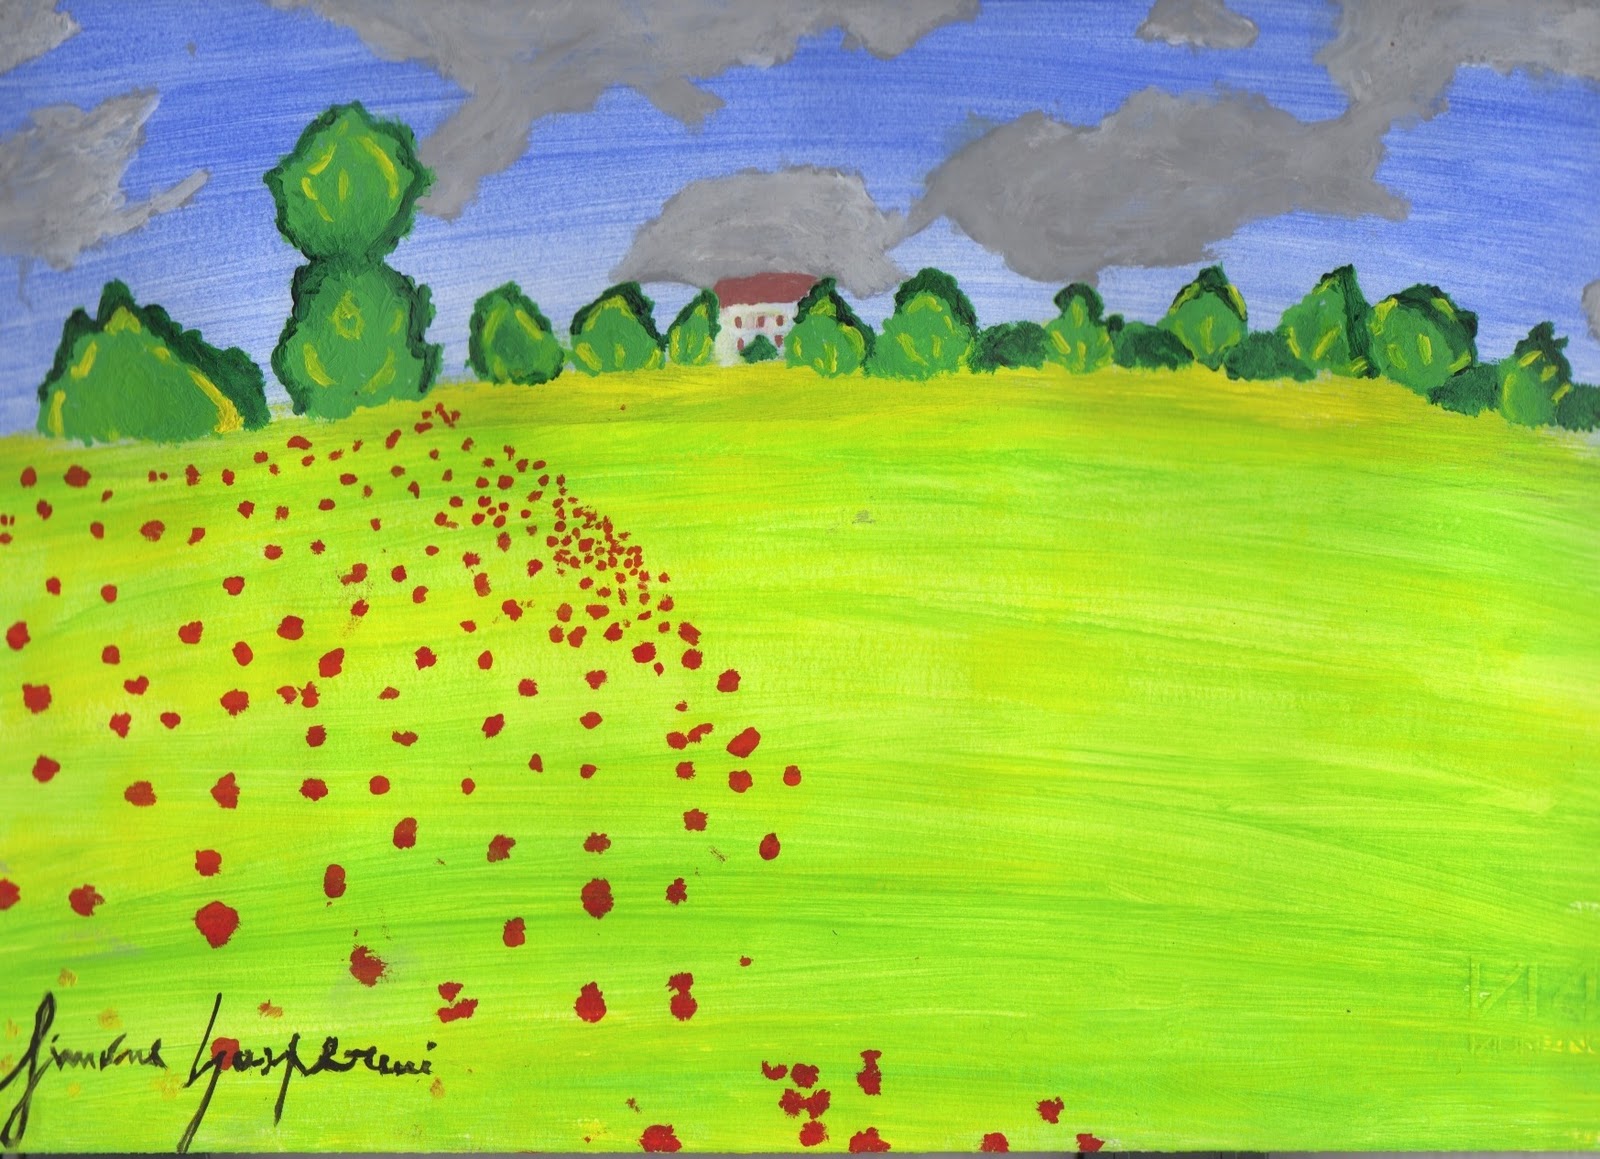 Acquisiamo un immagine dal web "Poppy field" Claude Monet 1873 proviamo a ridisegnare e colorare